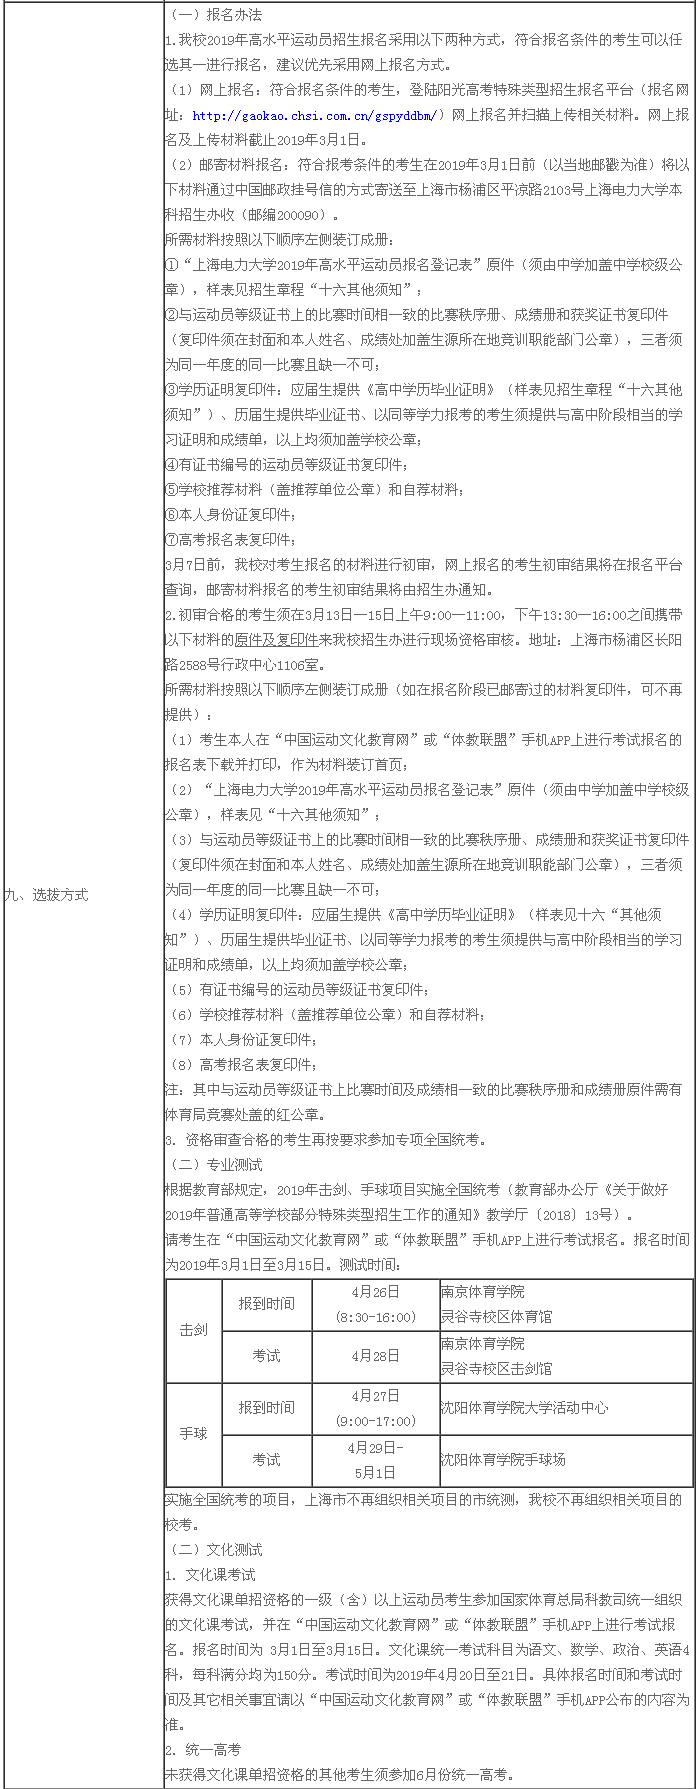 上海电力大学2019年高水平运动员招生章程(2